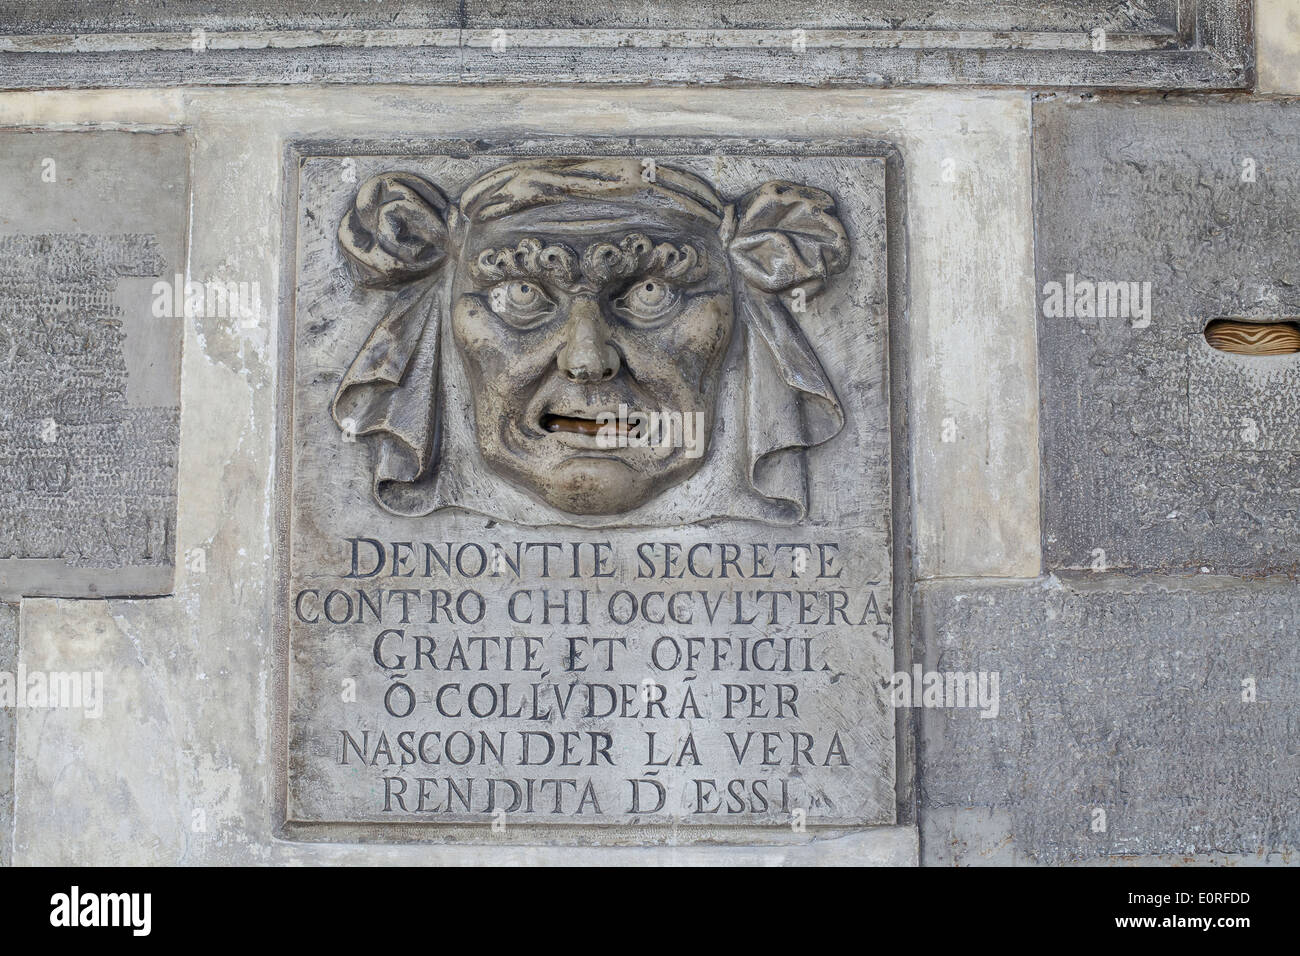 Lion es Mund Briefkasten für anonyme Denunziationen, Dogenpalast, Venedig Stockfoto